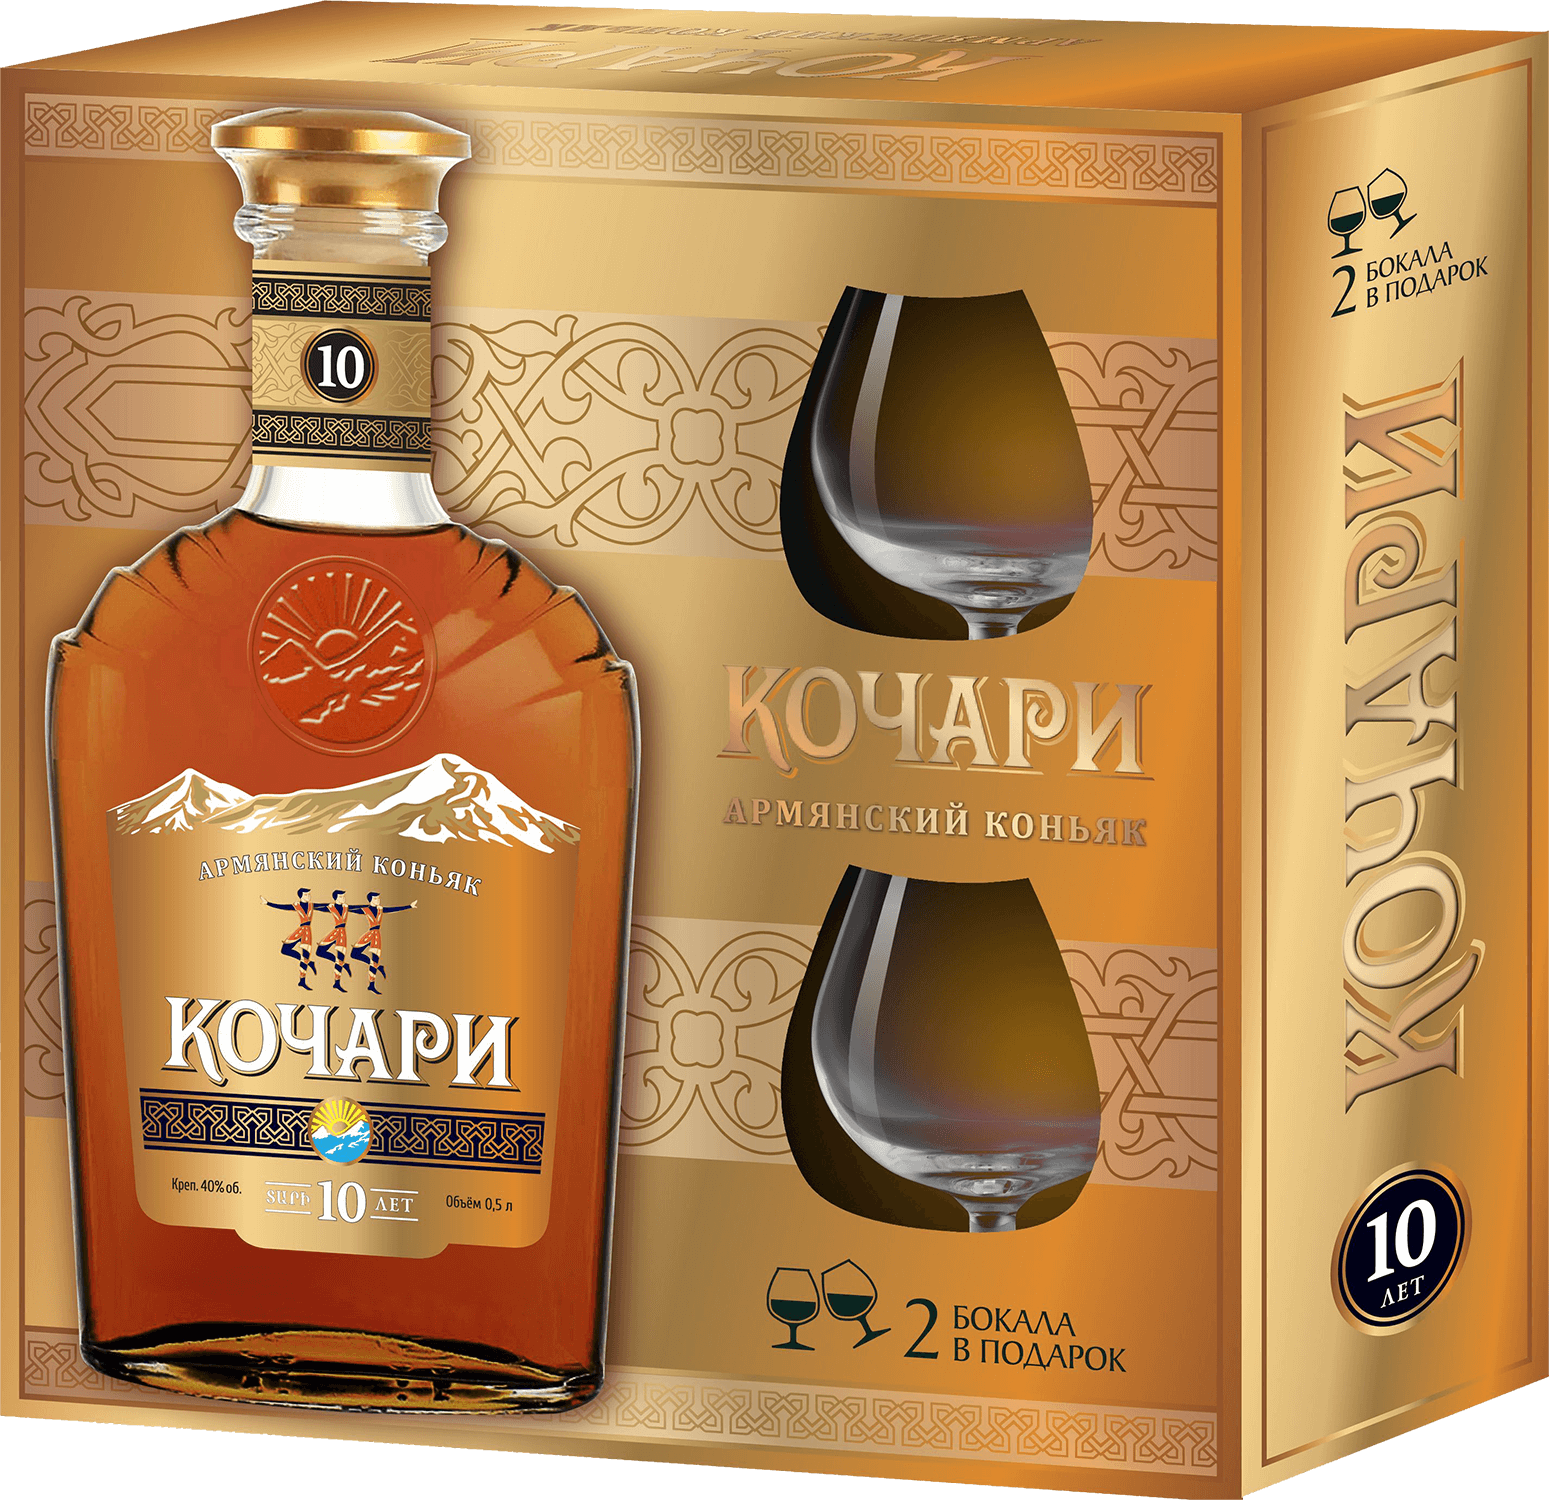 kochari armenian brandy 3 y o Kochari Armenian Brandy 10 Y.O. (gift box with 2 glasses)